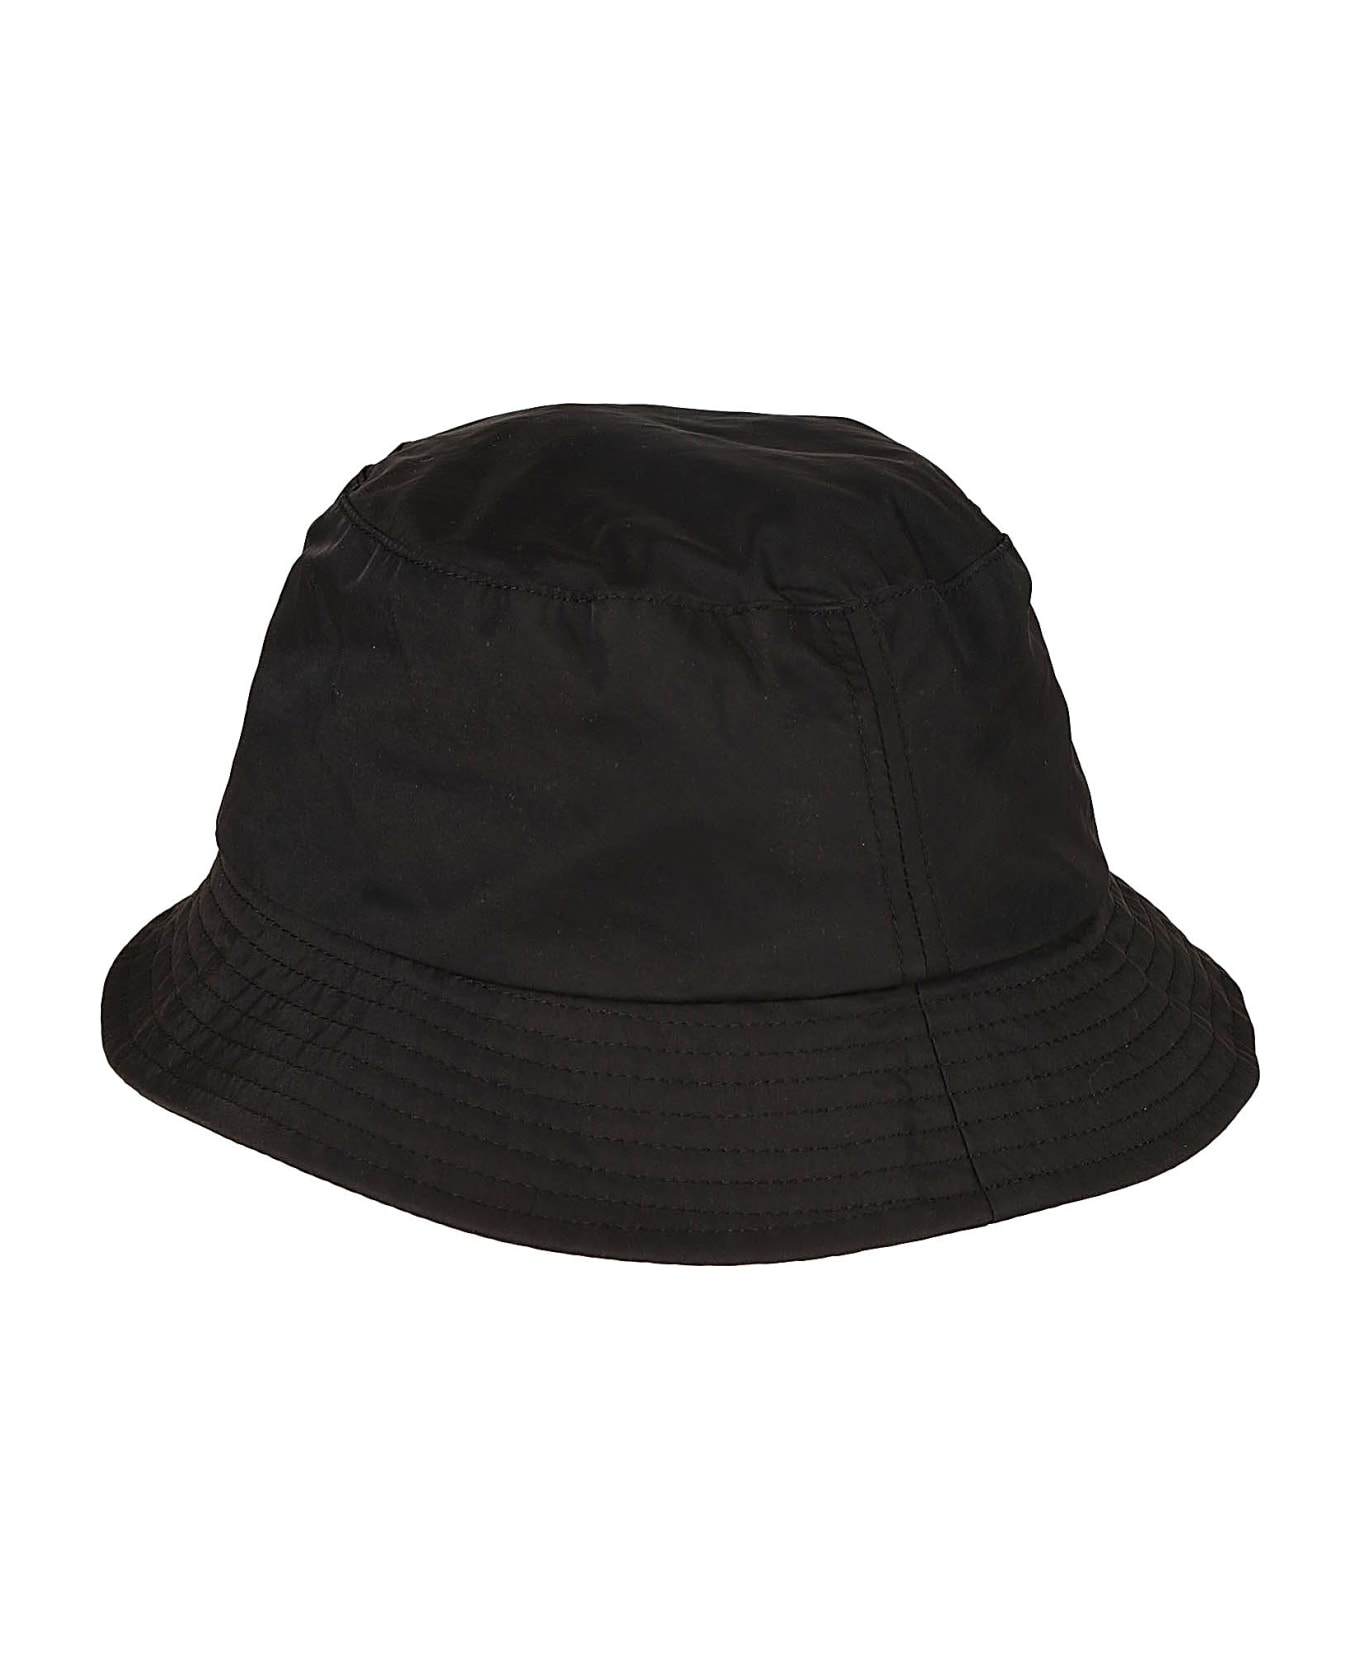 J.W. Anderson Logo Bucket Hat - Black